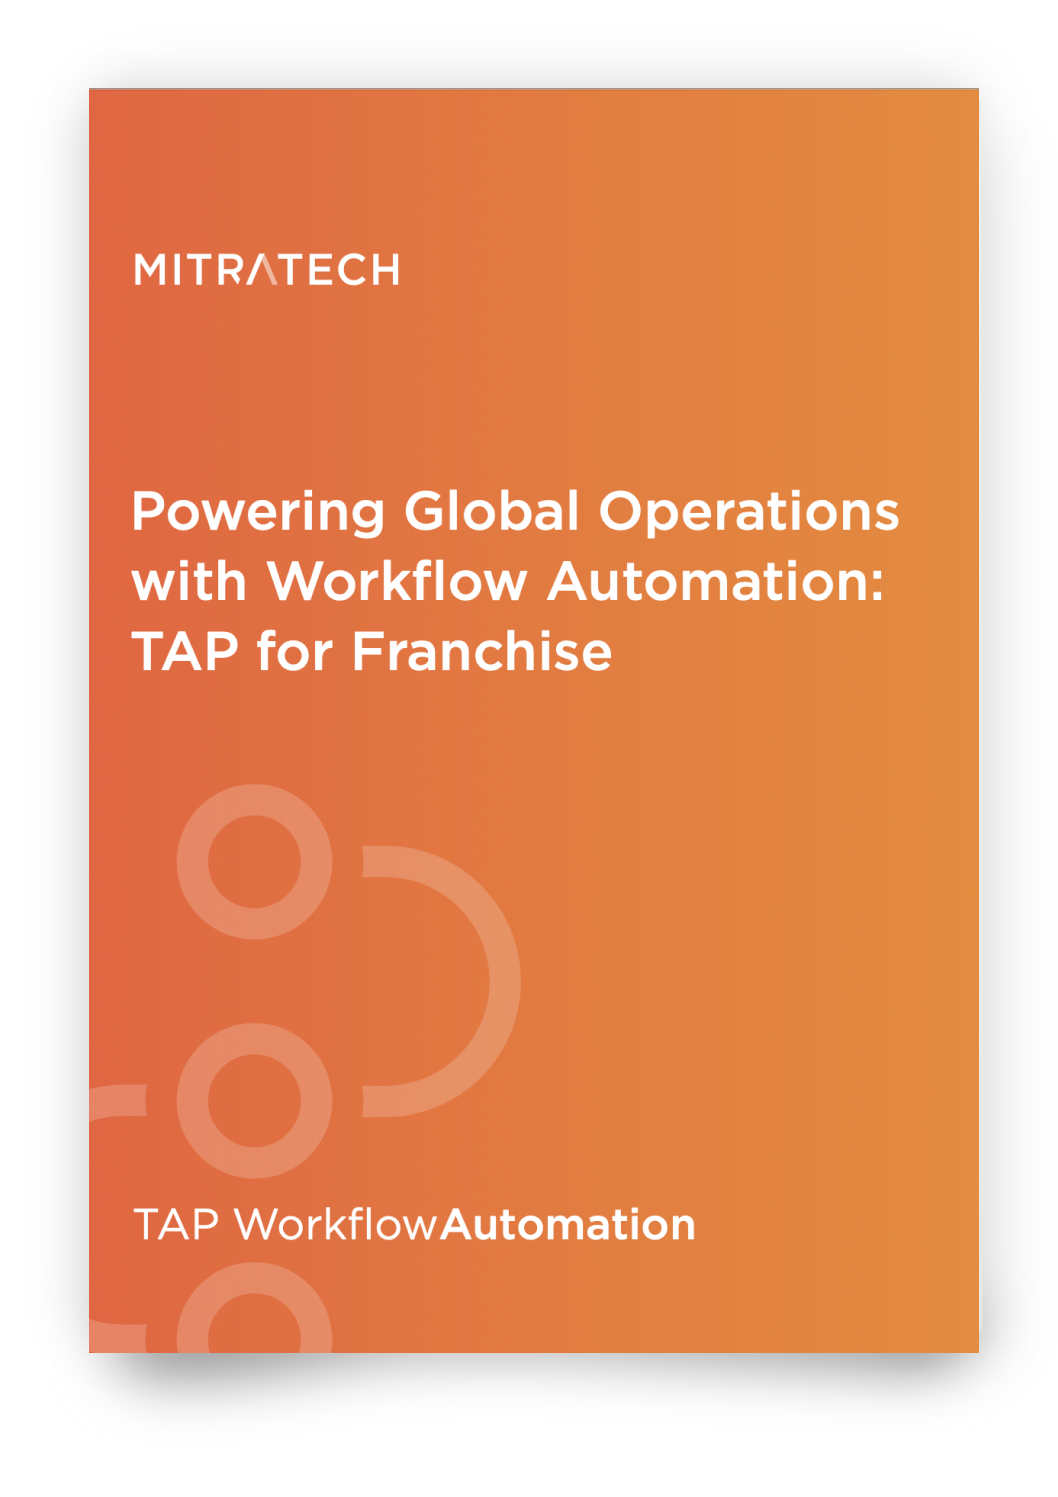 Laden Sie die TAP-Broschüre herunter und erfahren Sie mehr über Global Operation Automation